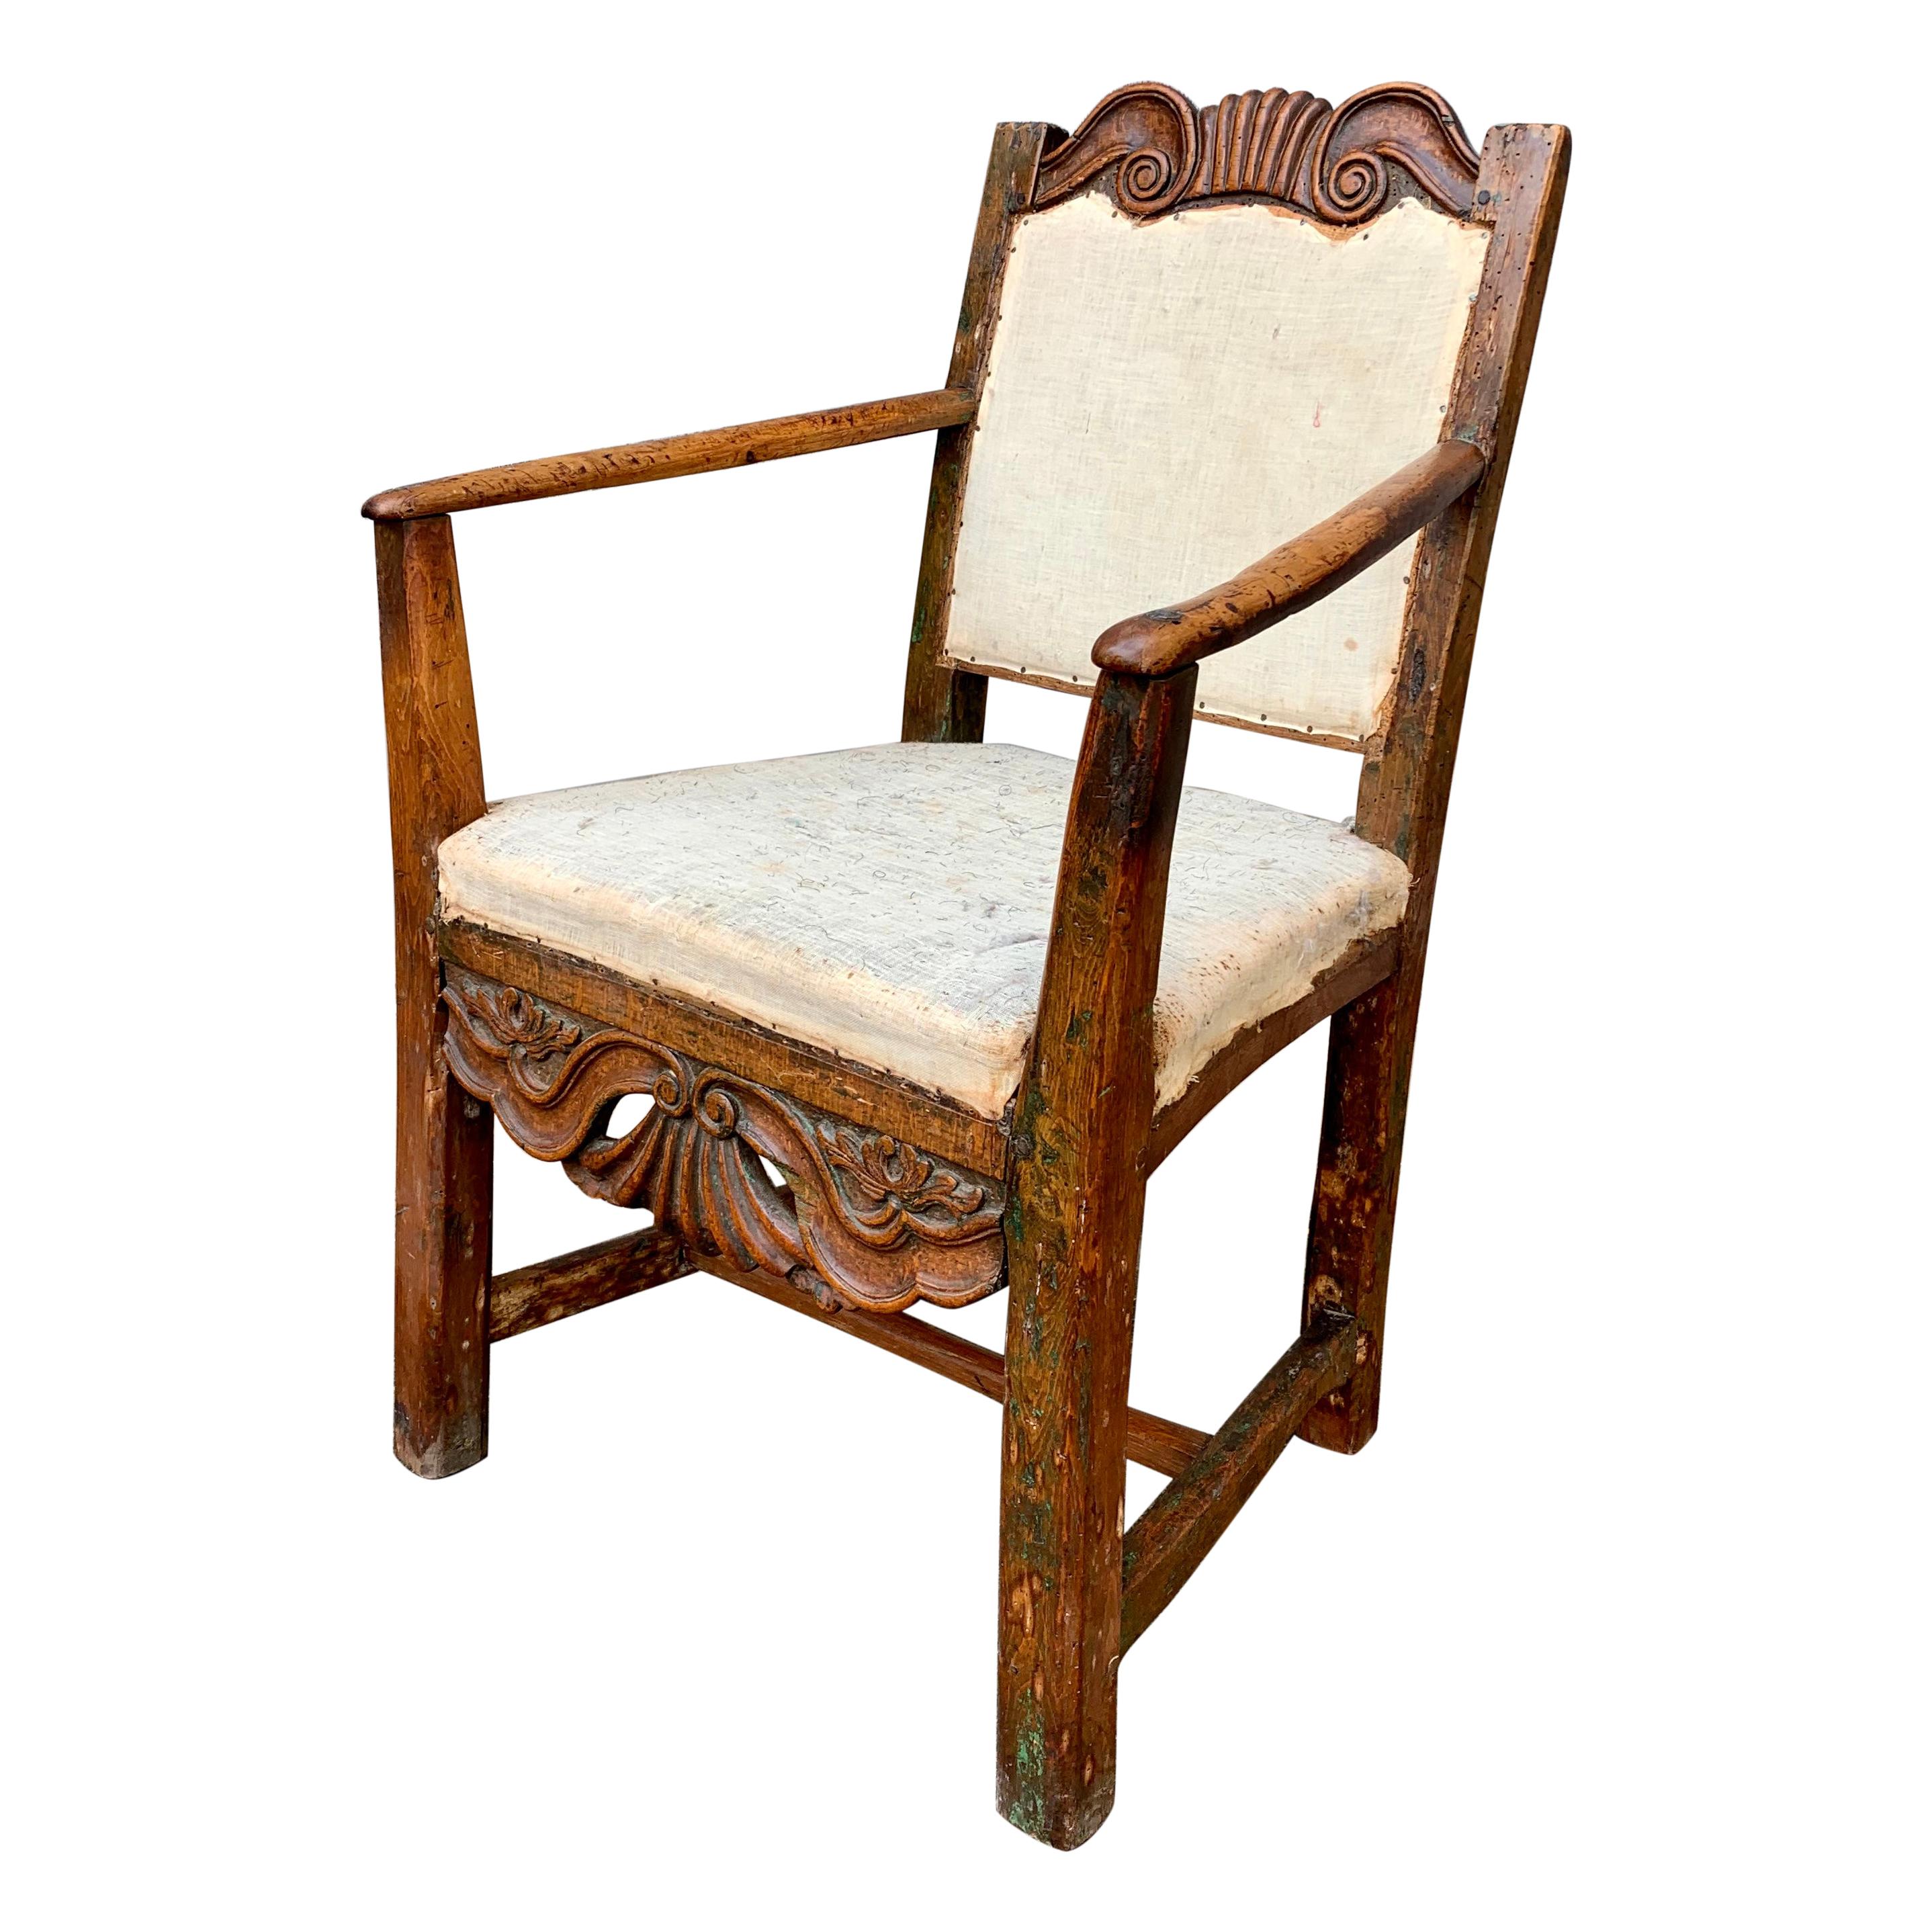 Petit fauteuil d'art populaire suédois primitif rococo du 18ème siècle